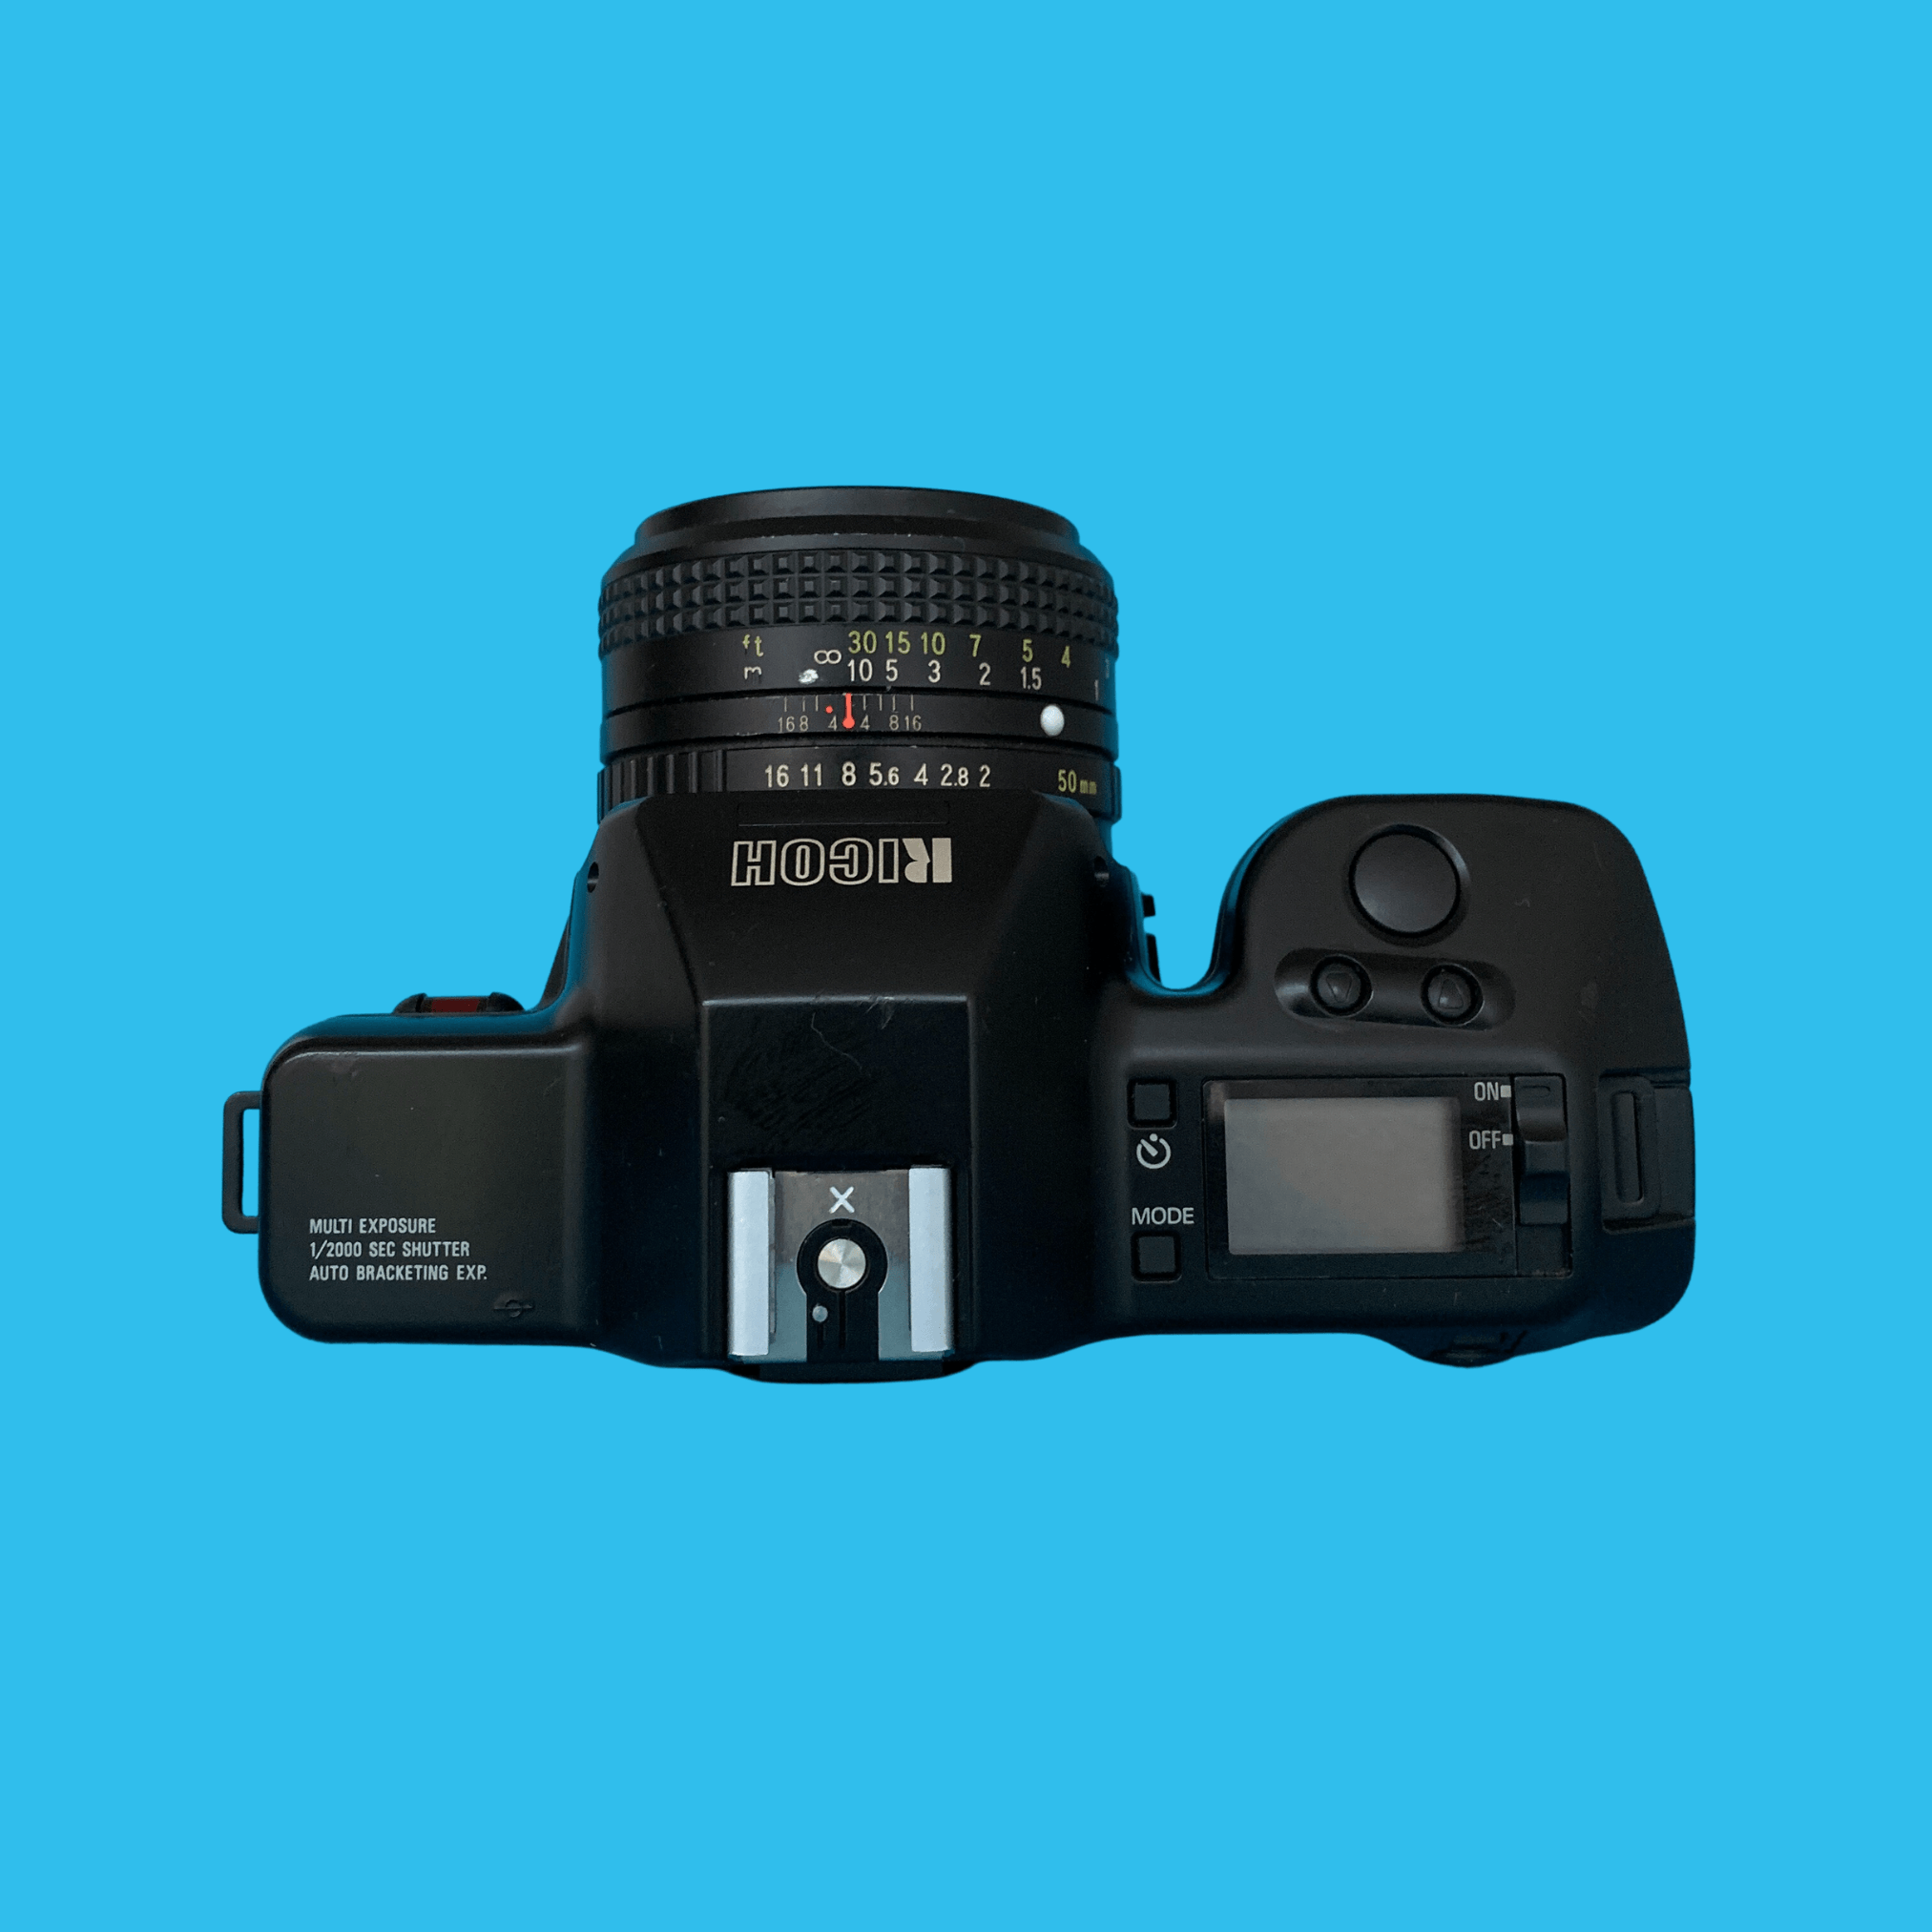 RICOH リコー XR-7 フィルムカメラ 50mm レンズ付き 新商品!新型 